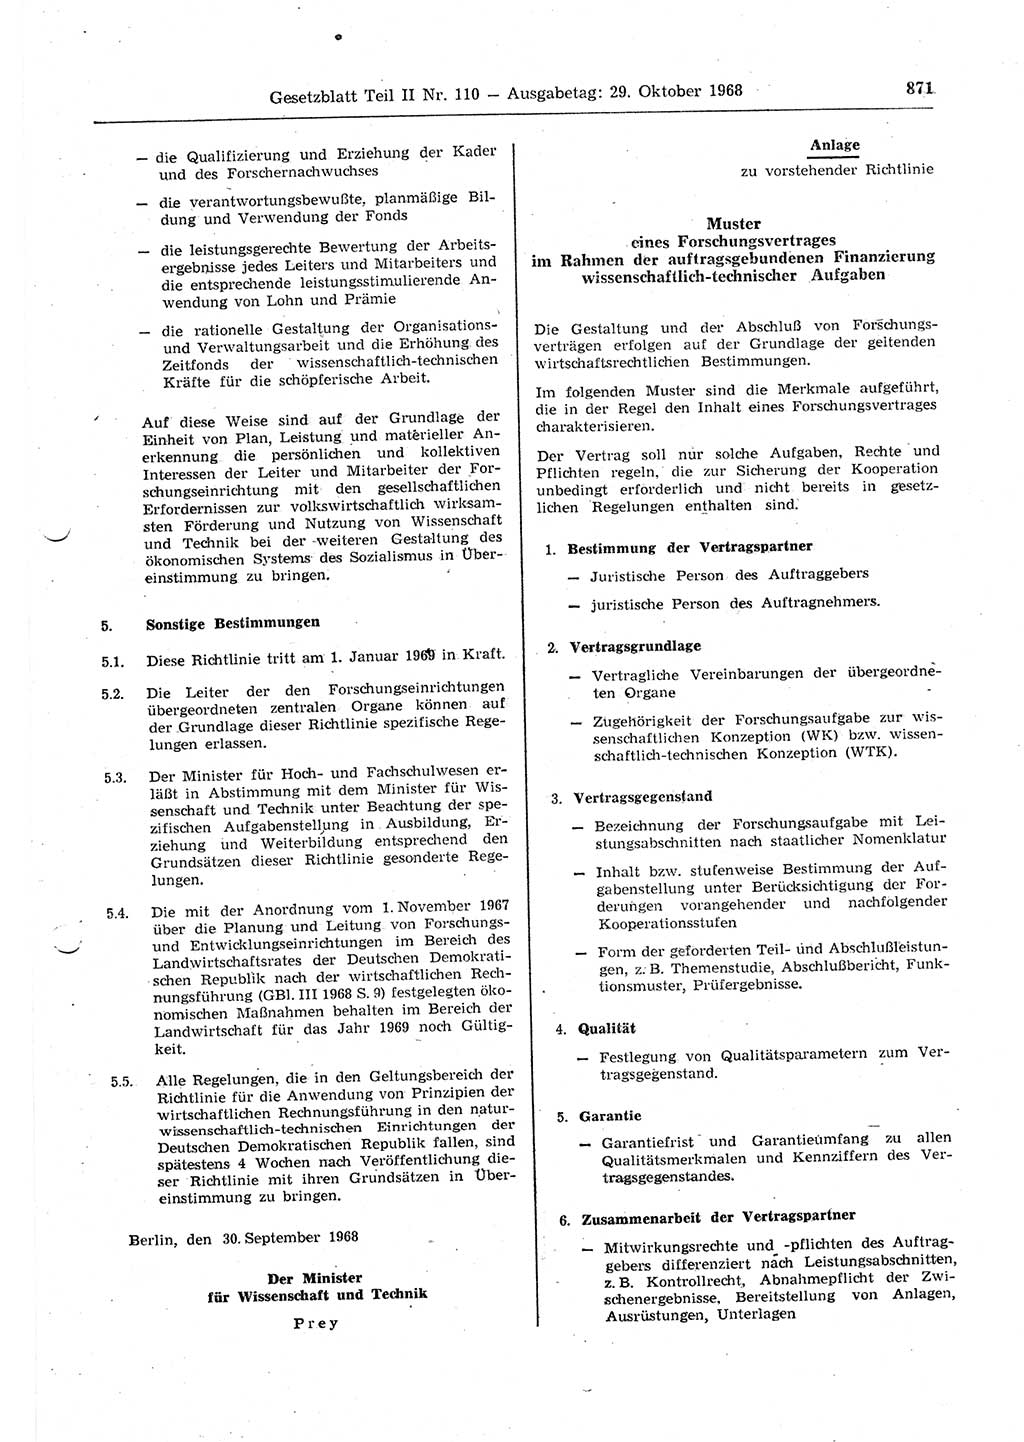 Gesetzblatt (GBl.) der Deutschen Demokratischen Republik (DDR) Teil ⅠⅠ 1968, Seite 871 (GBl. DDR ⅠⅠ 1968, S. 871)